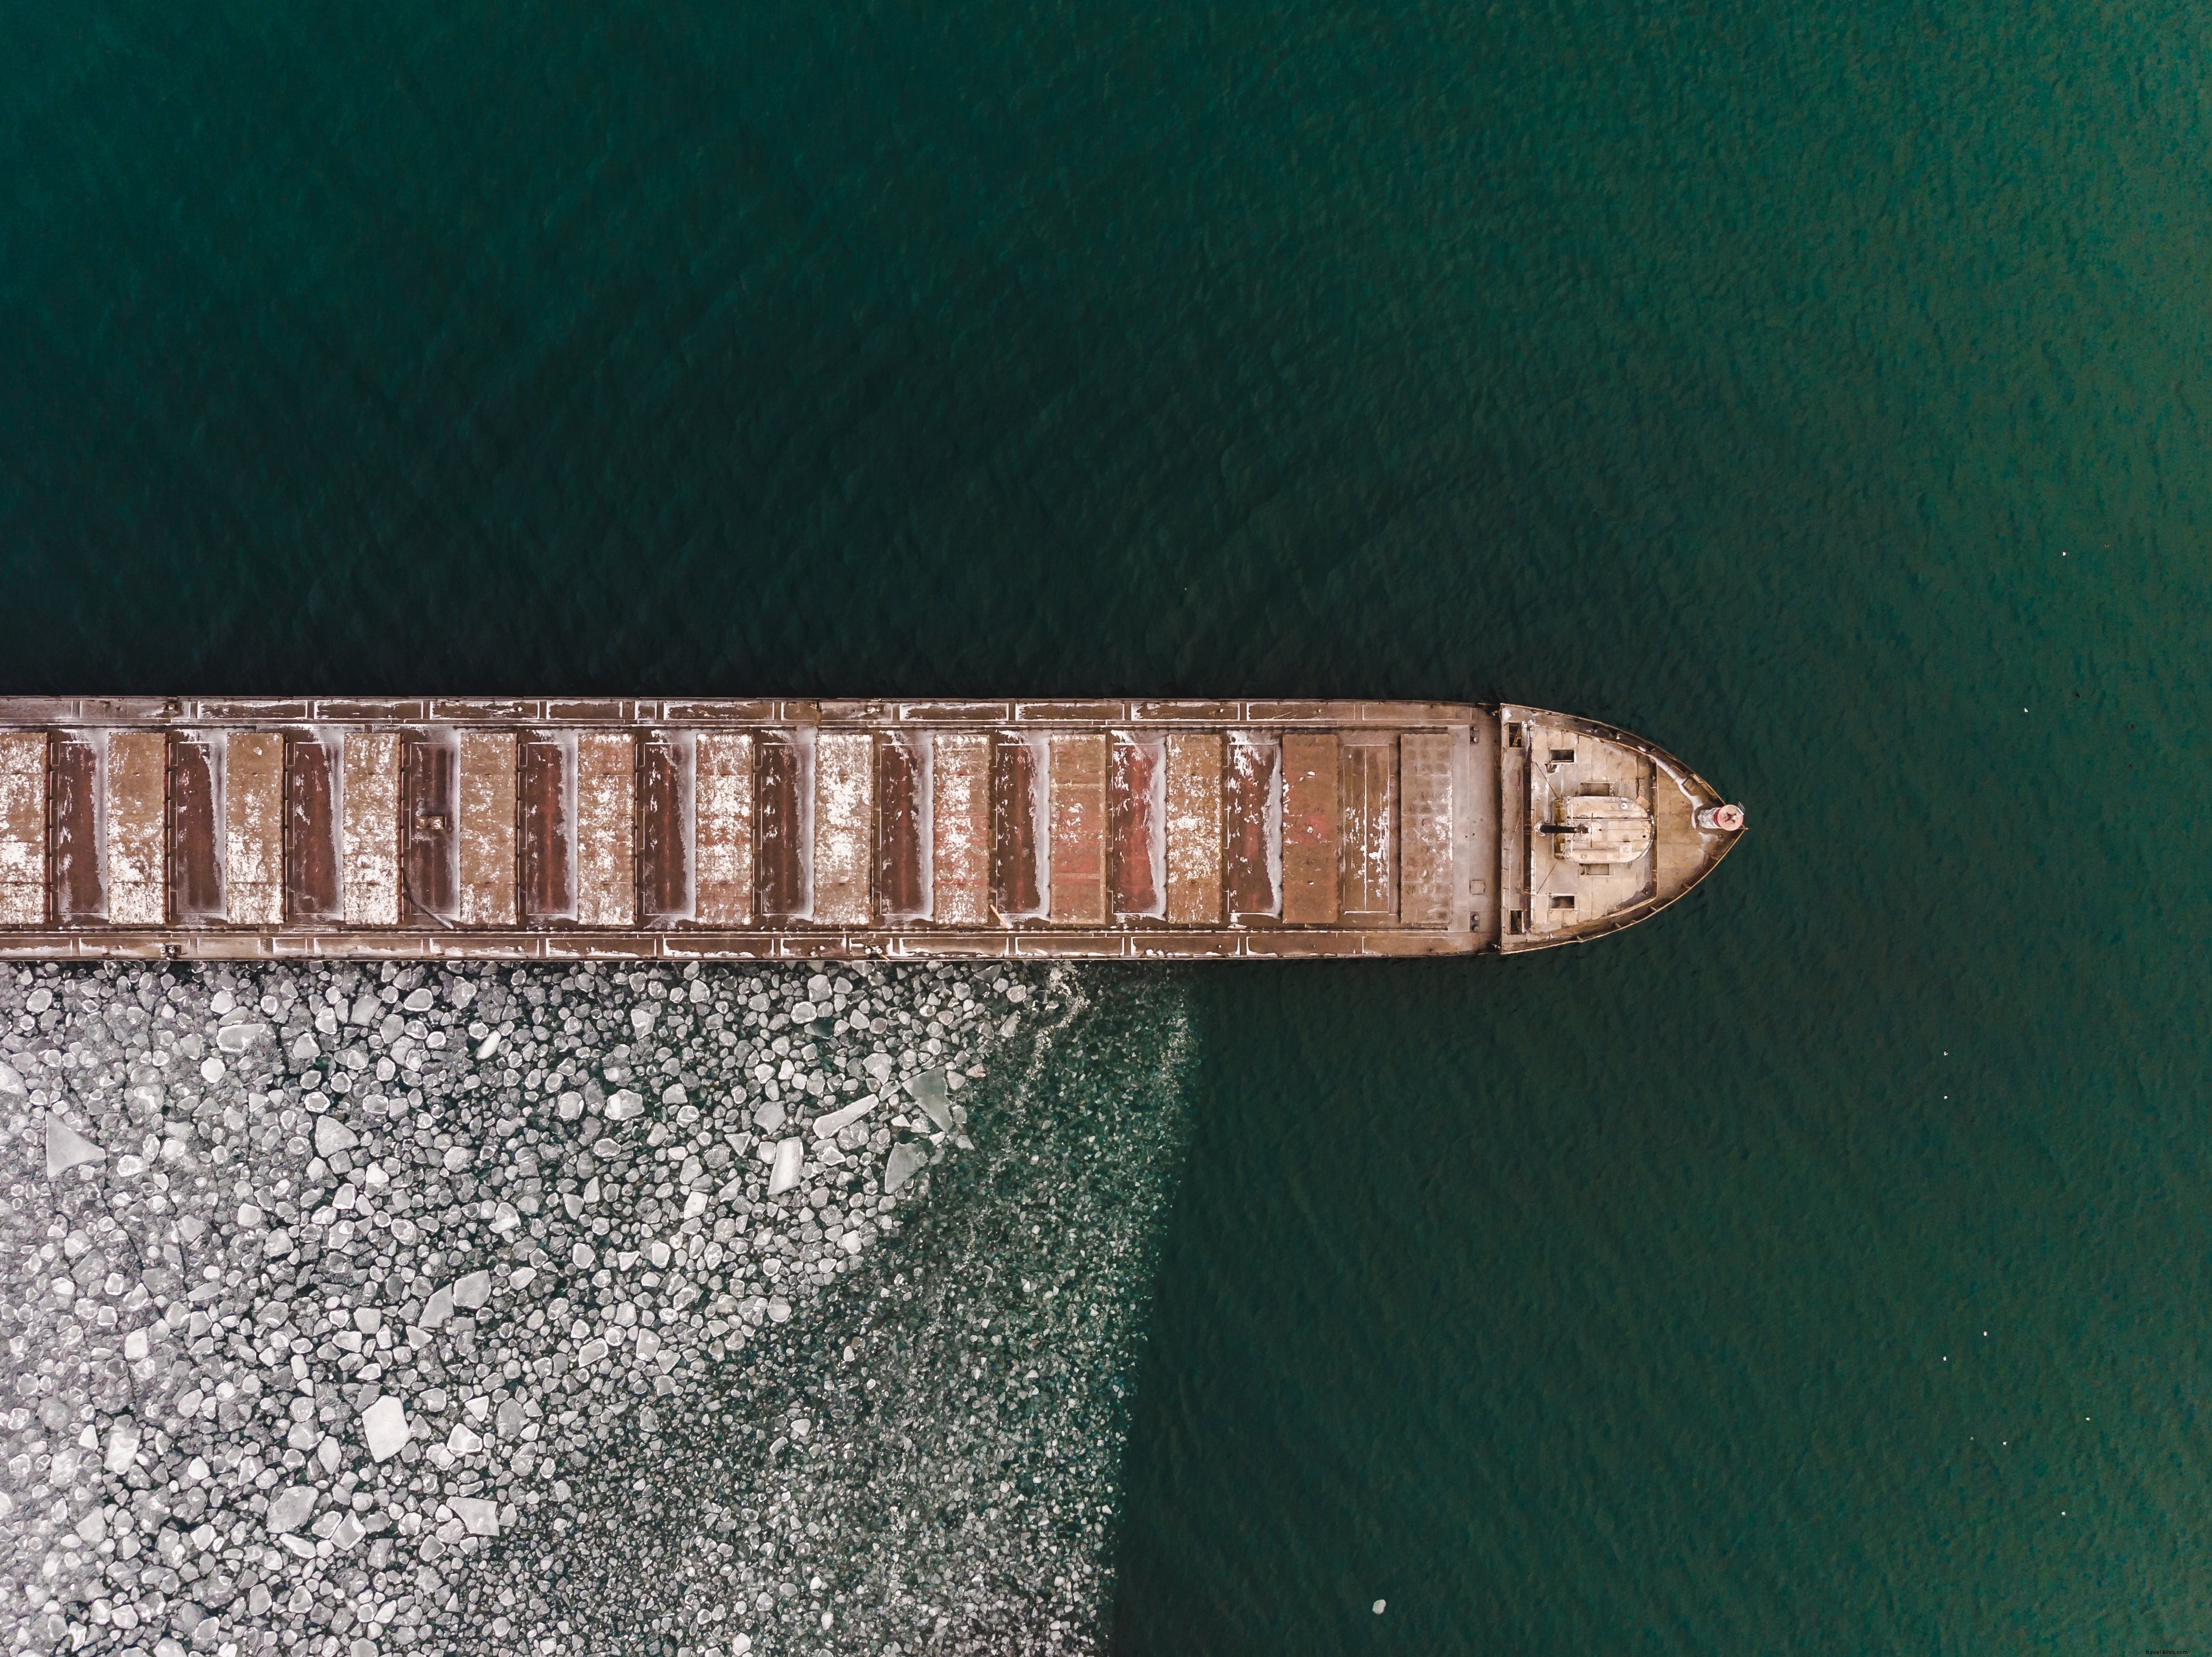 Vue aérienne d un bateau entouré de glace Photo